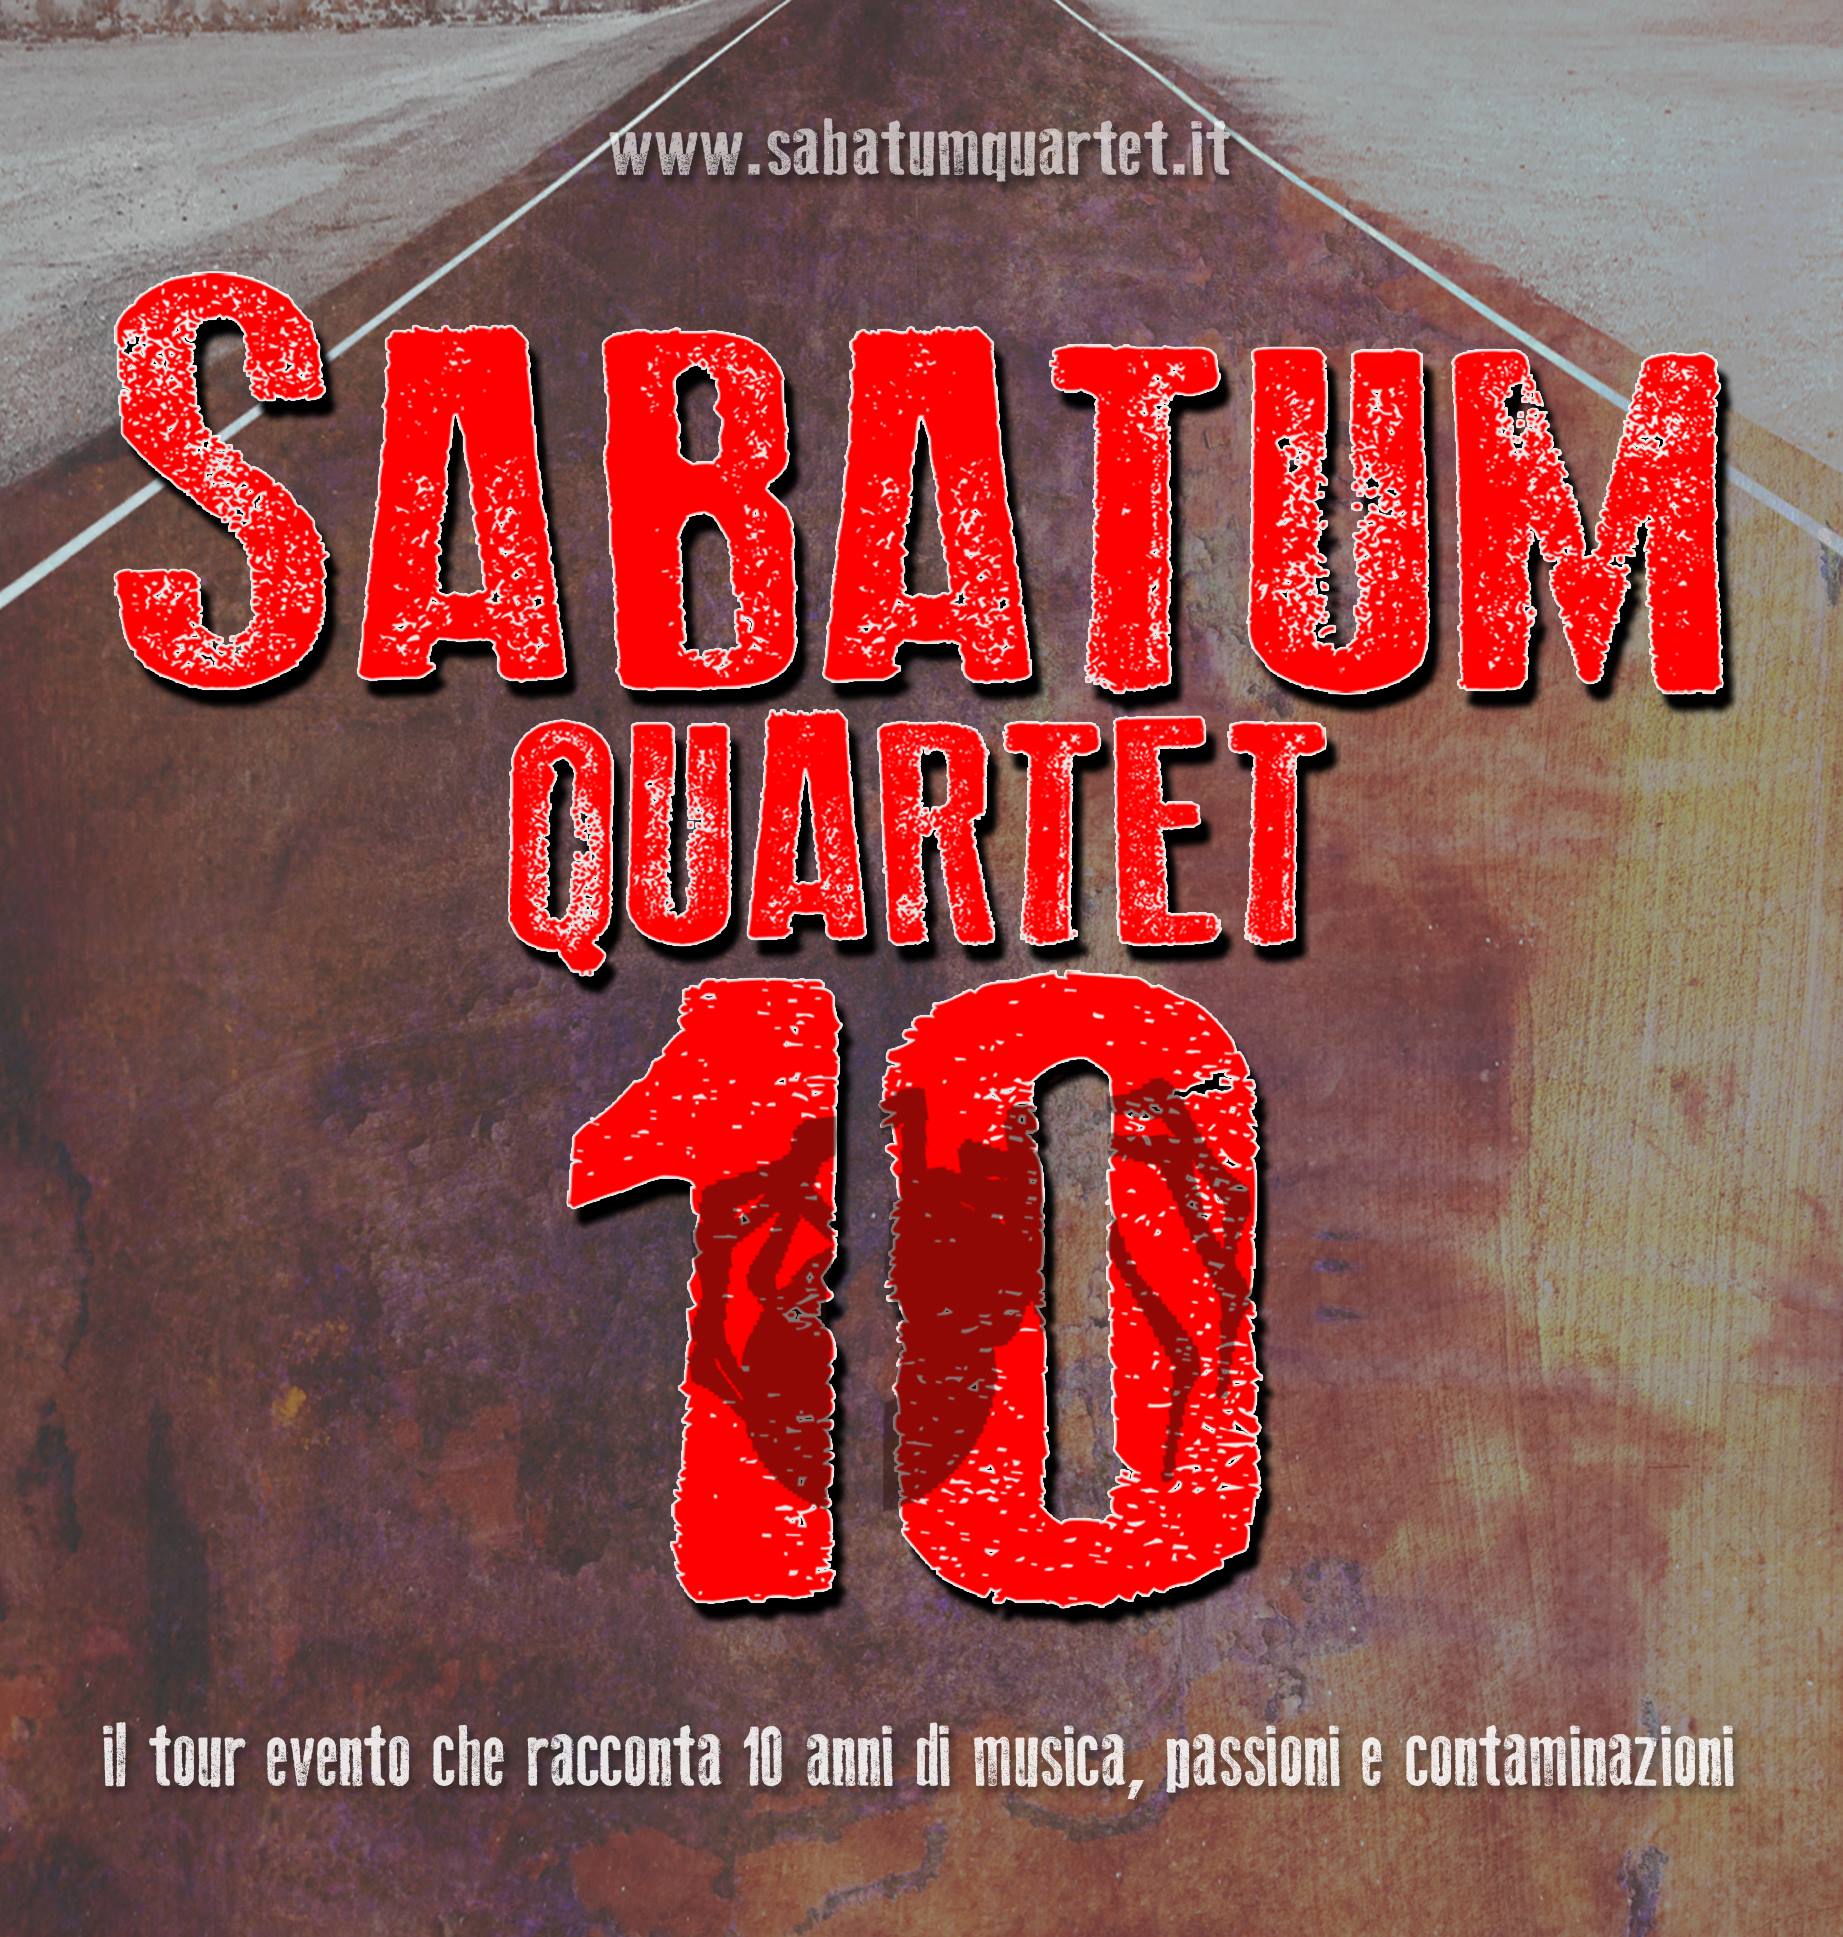 sabatum quartet